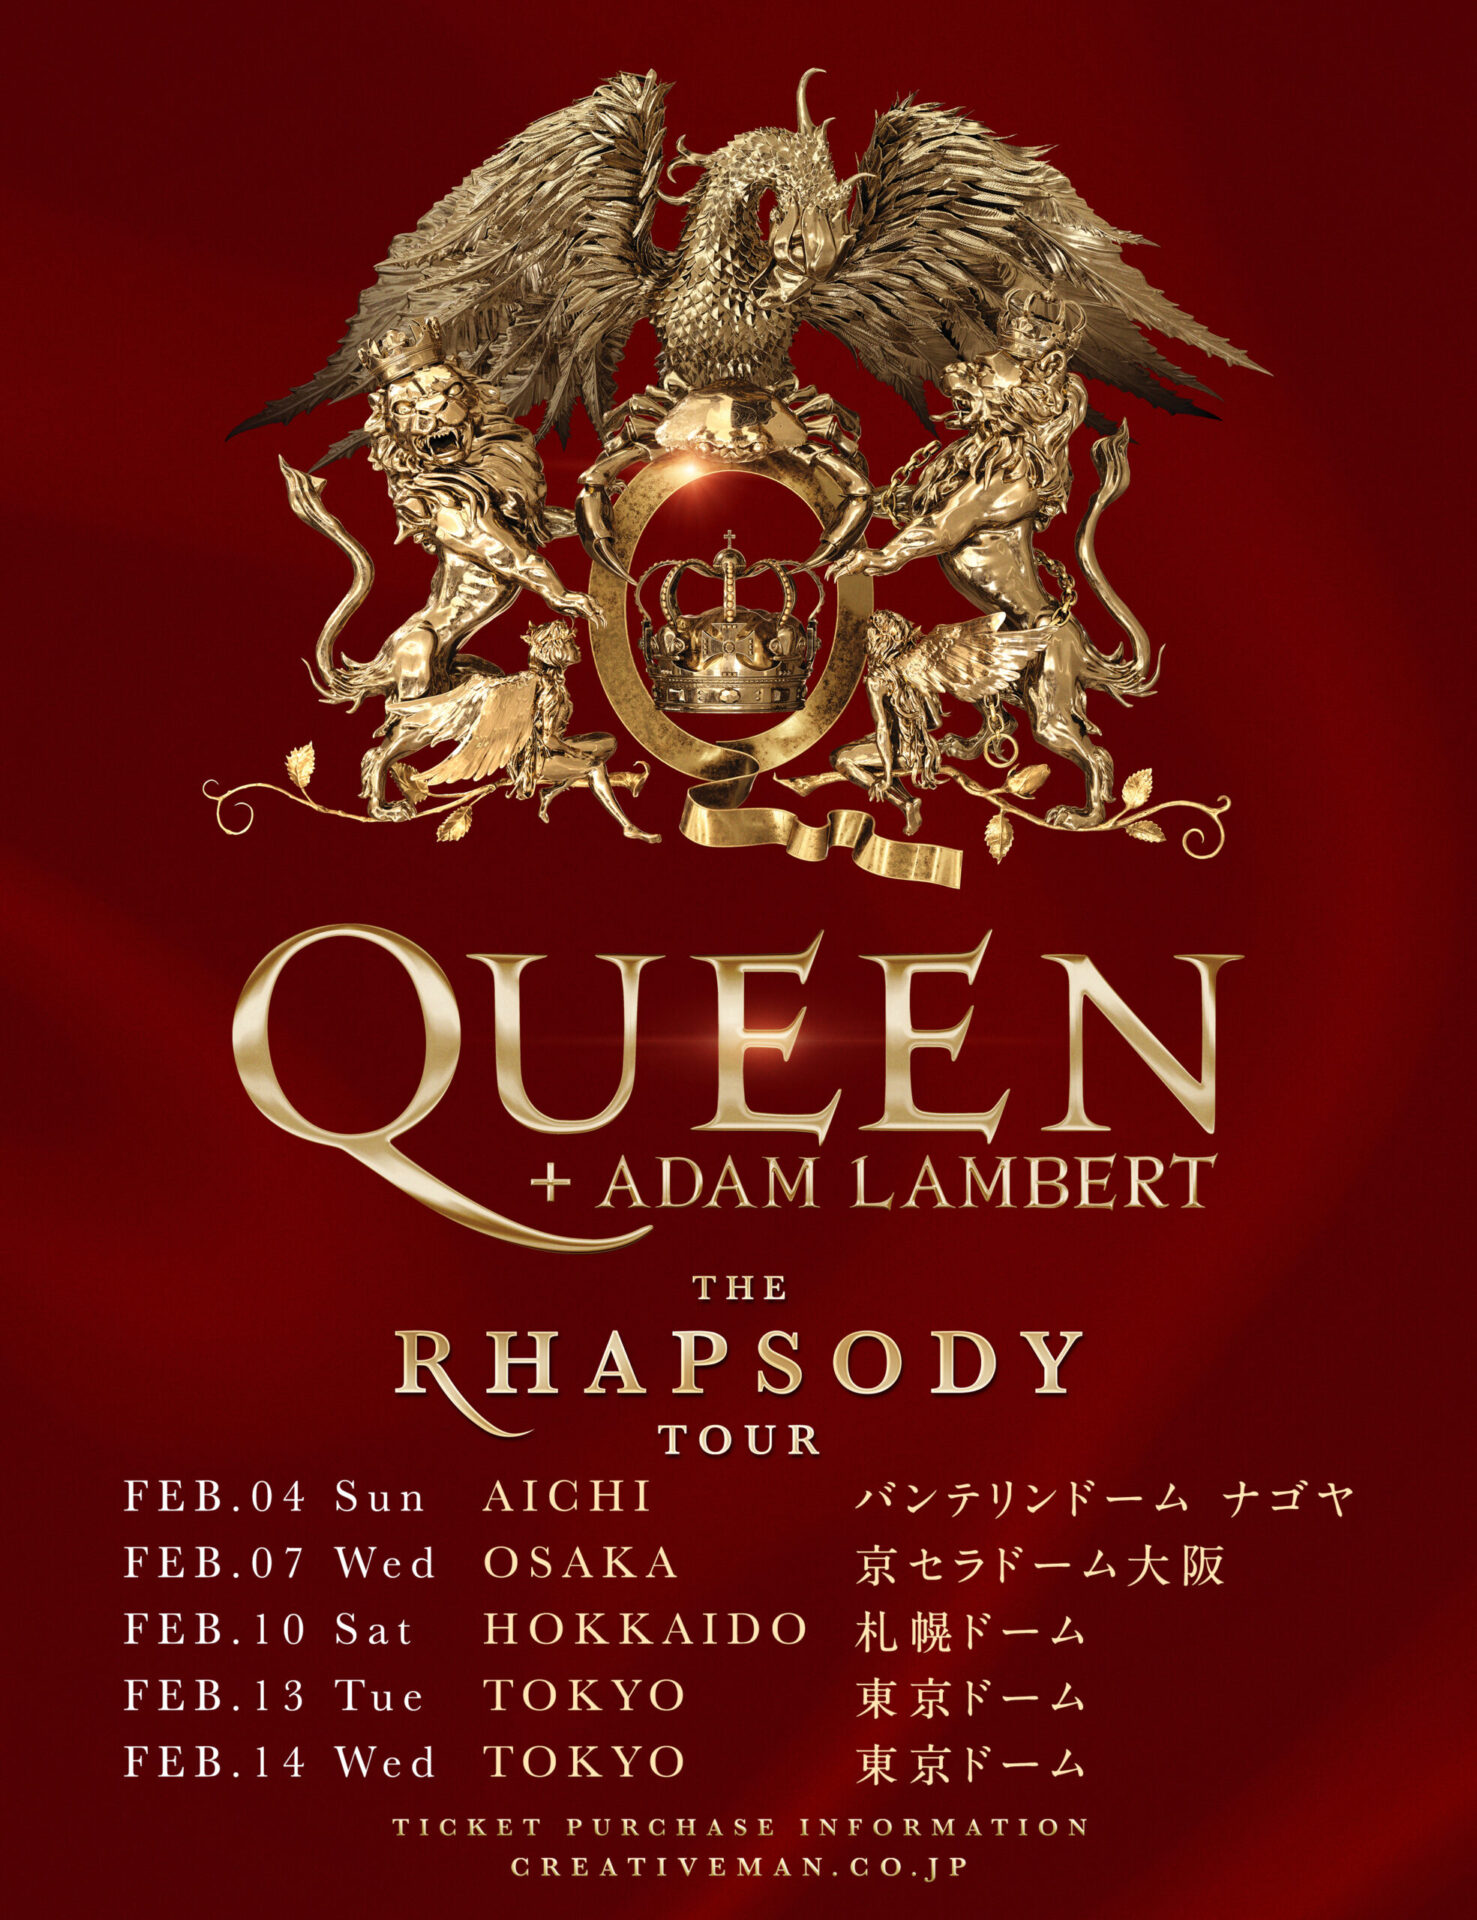 QUEEN + ADAM LAMBERT -THE RHAPSODY TOUR- | ニッポン放送イベント